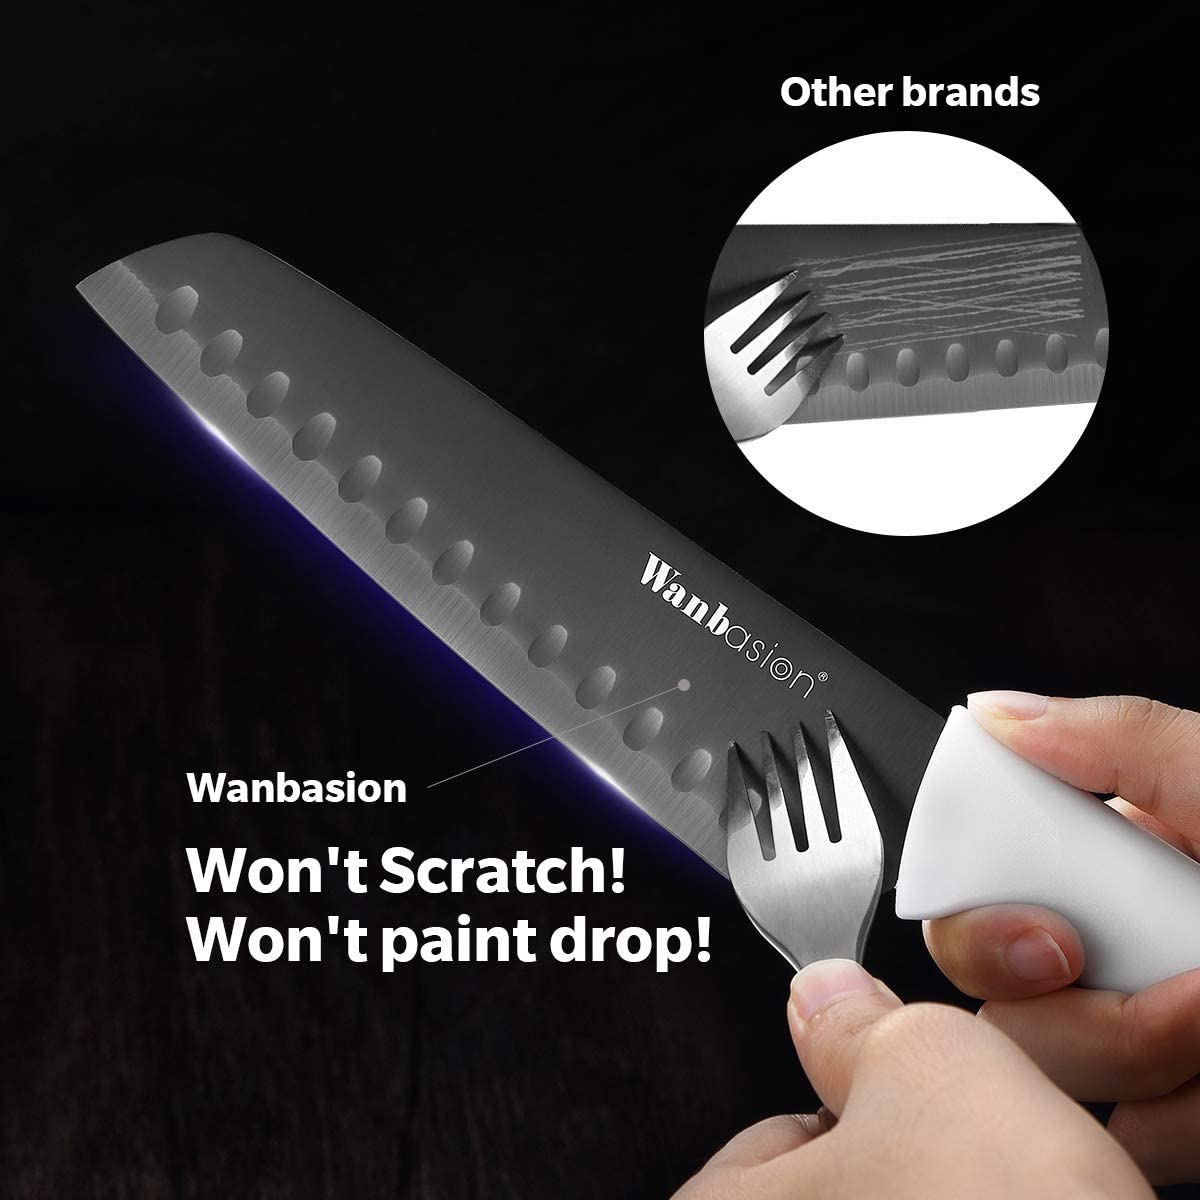 Modern Kitchen Knife Set – slyinspireme